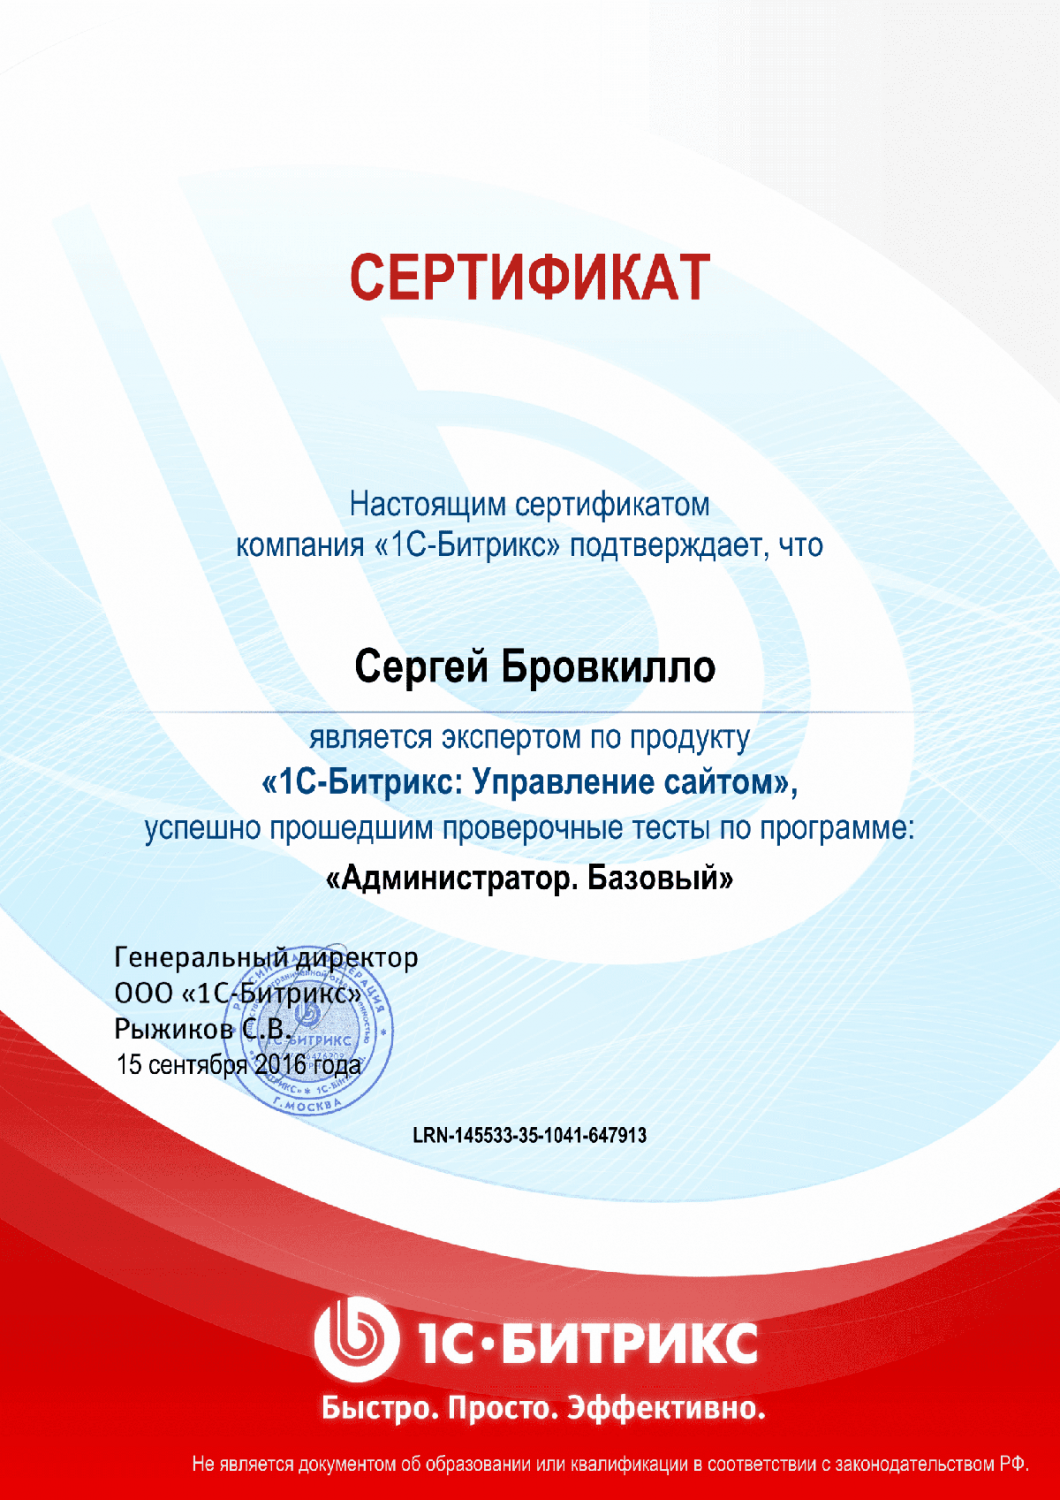 Сертификат эксперта по программе "Администратор. Базовый" в Сочи